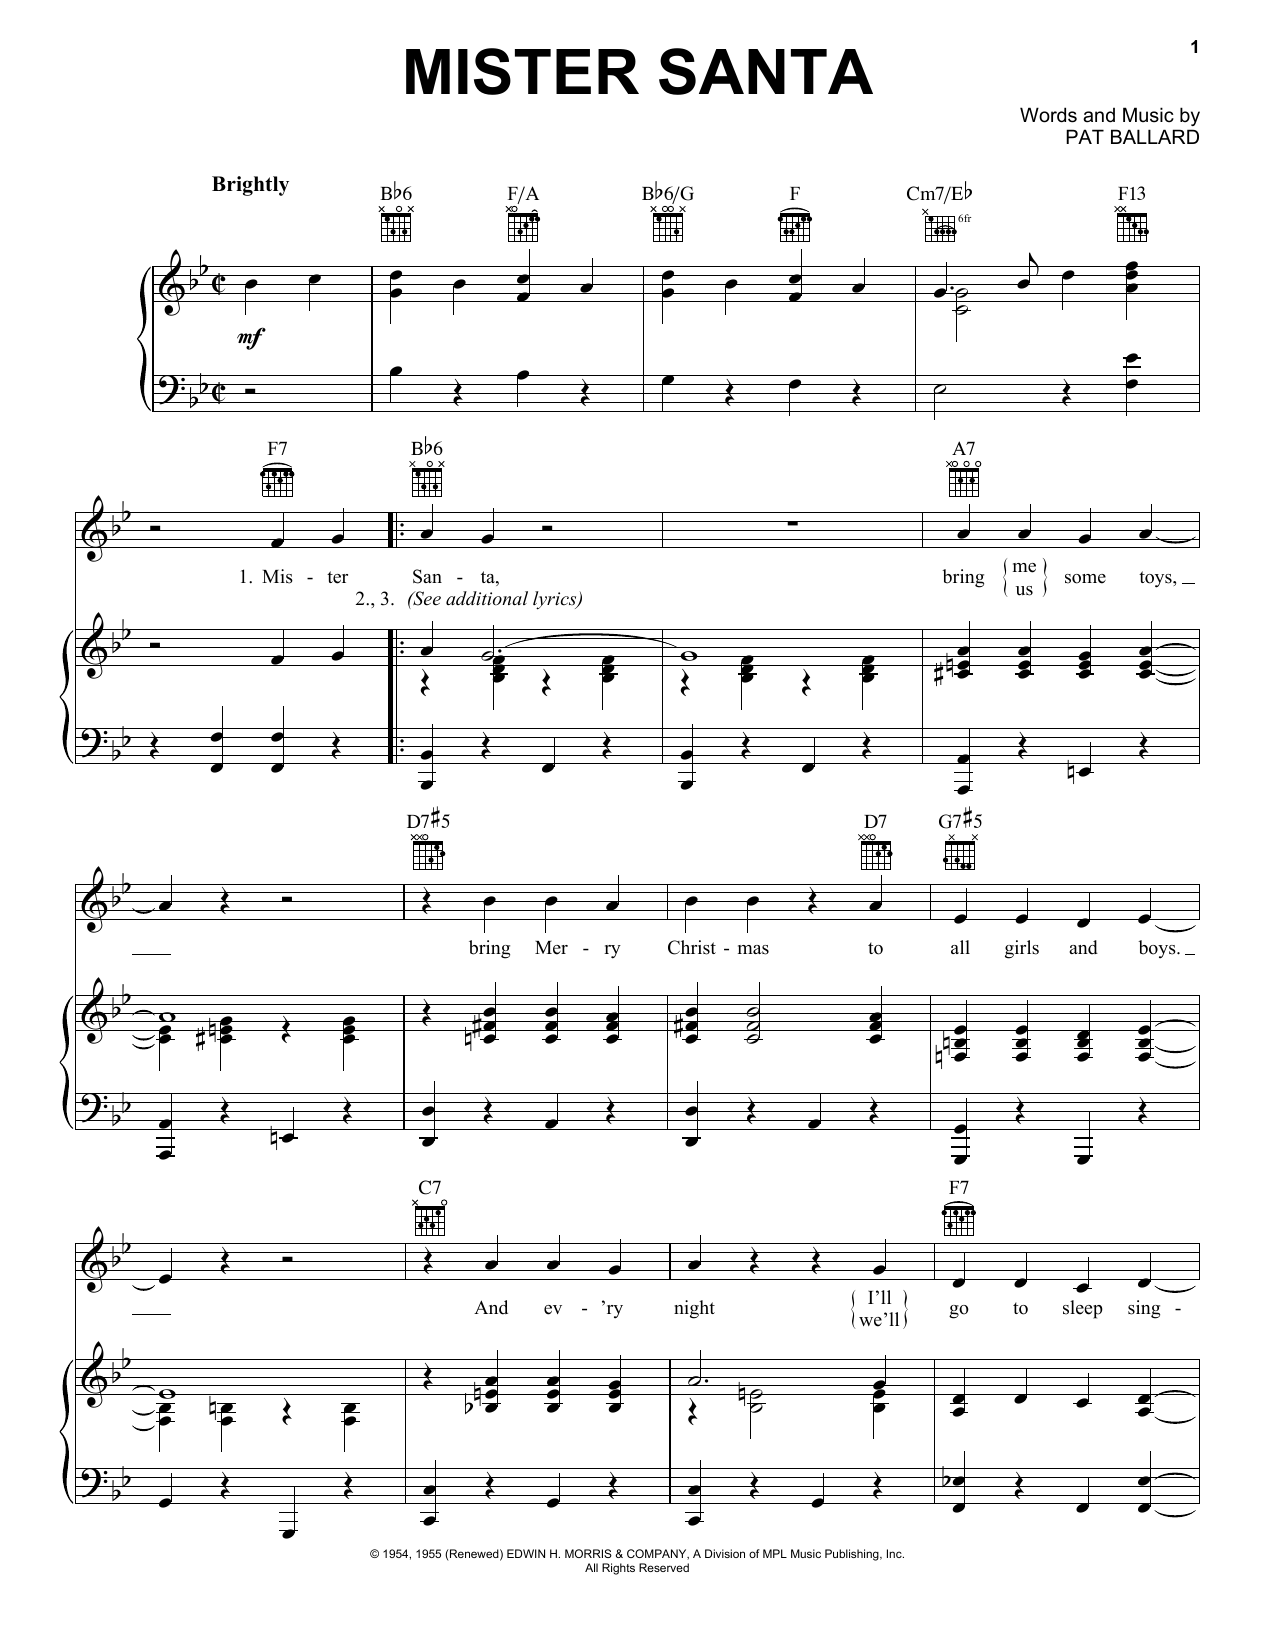 Pat Ballard Mister Santa Sheet Music Notes & Chords for Piano, Vocal & Guitar (Right-Hand Melody) - Download or Print PDF